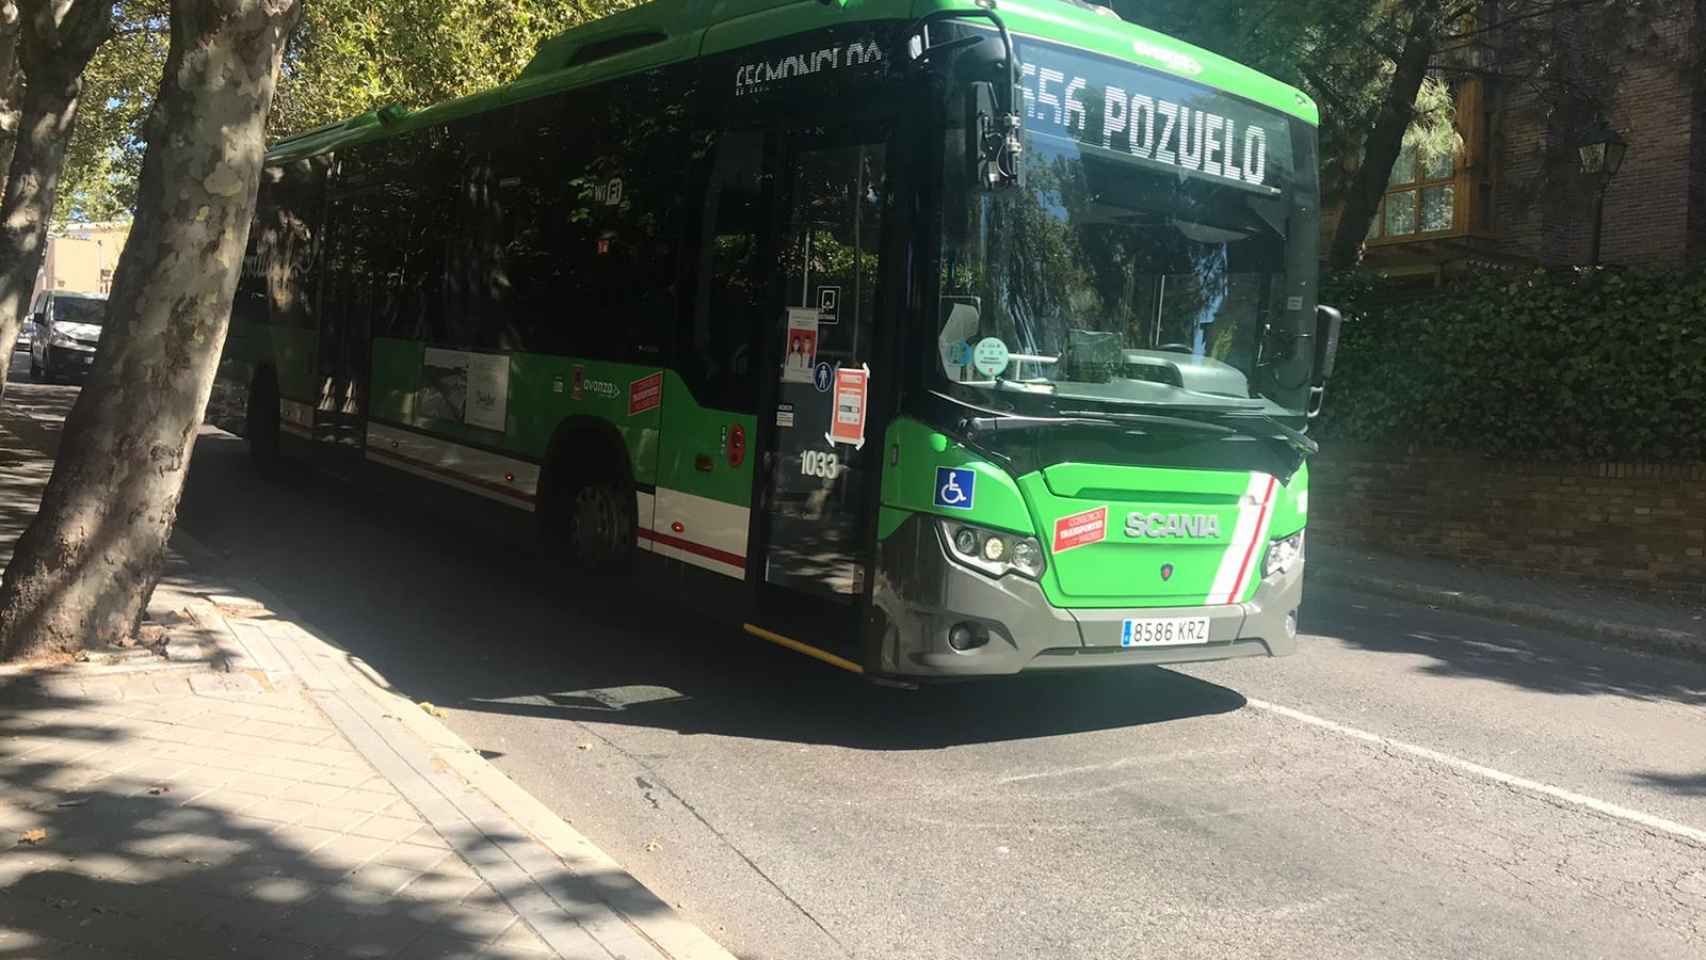 Autobús de la línea 656 que conecta Madrid y Pozuelo